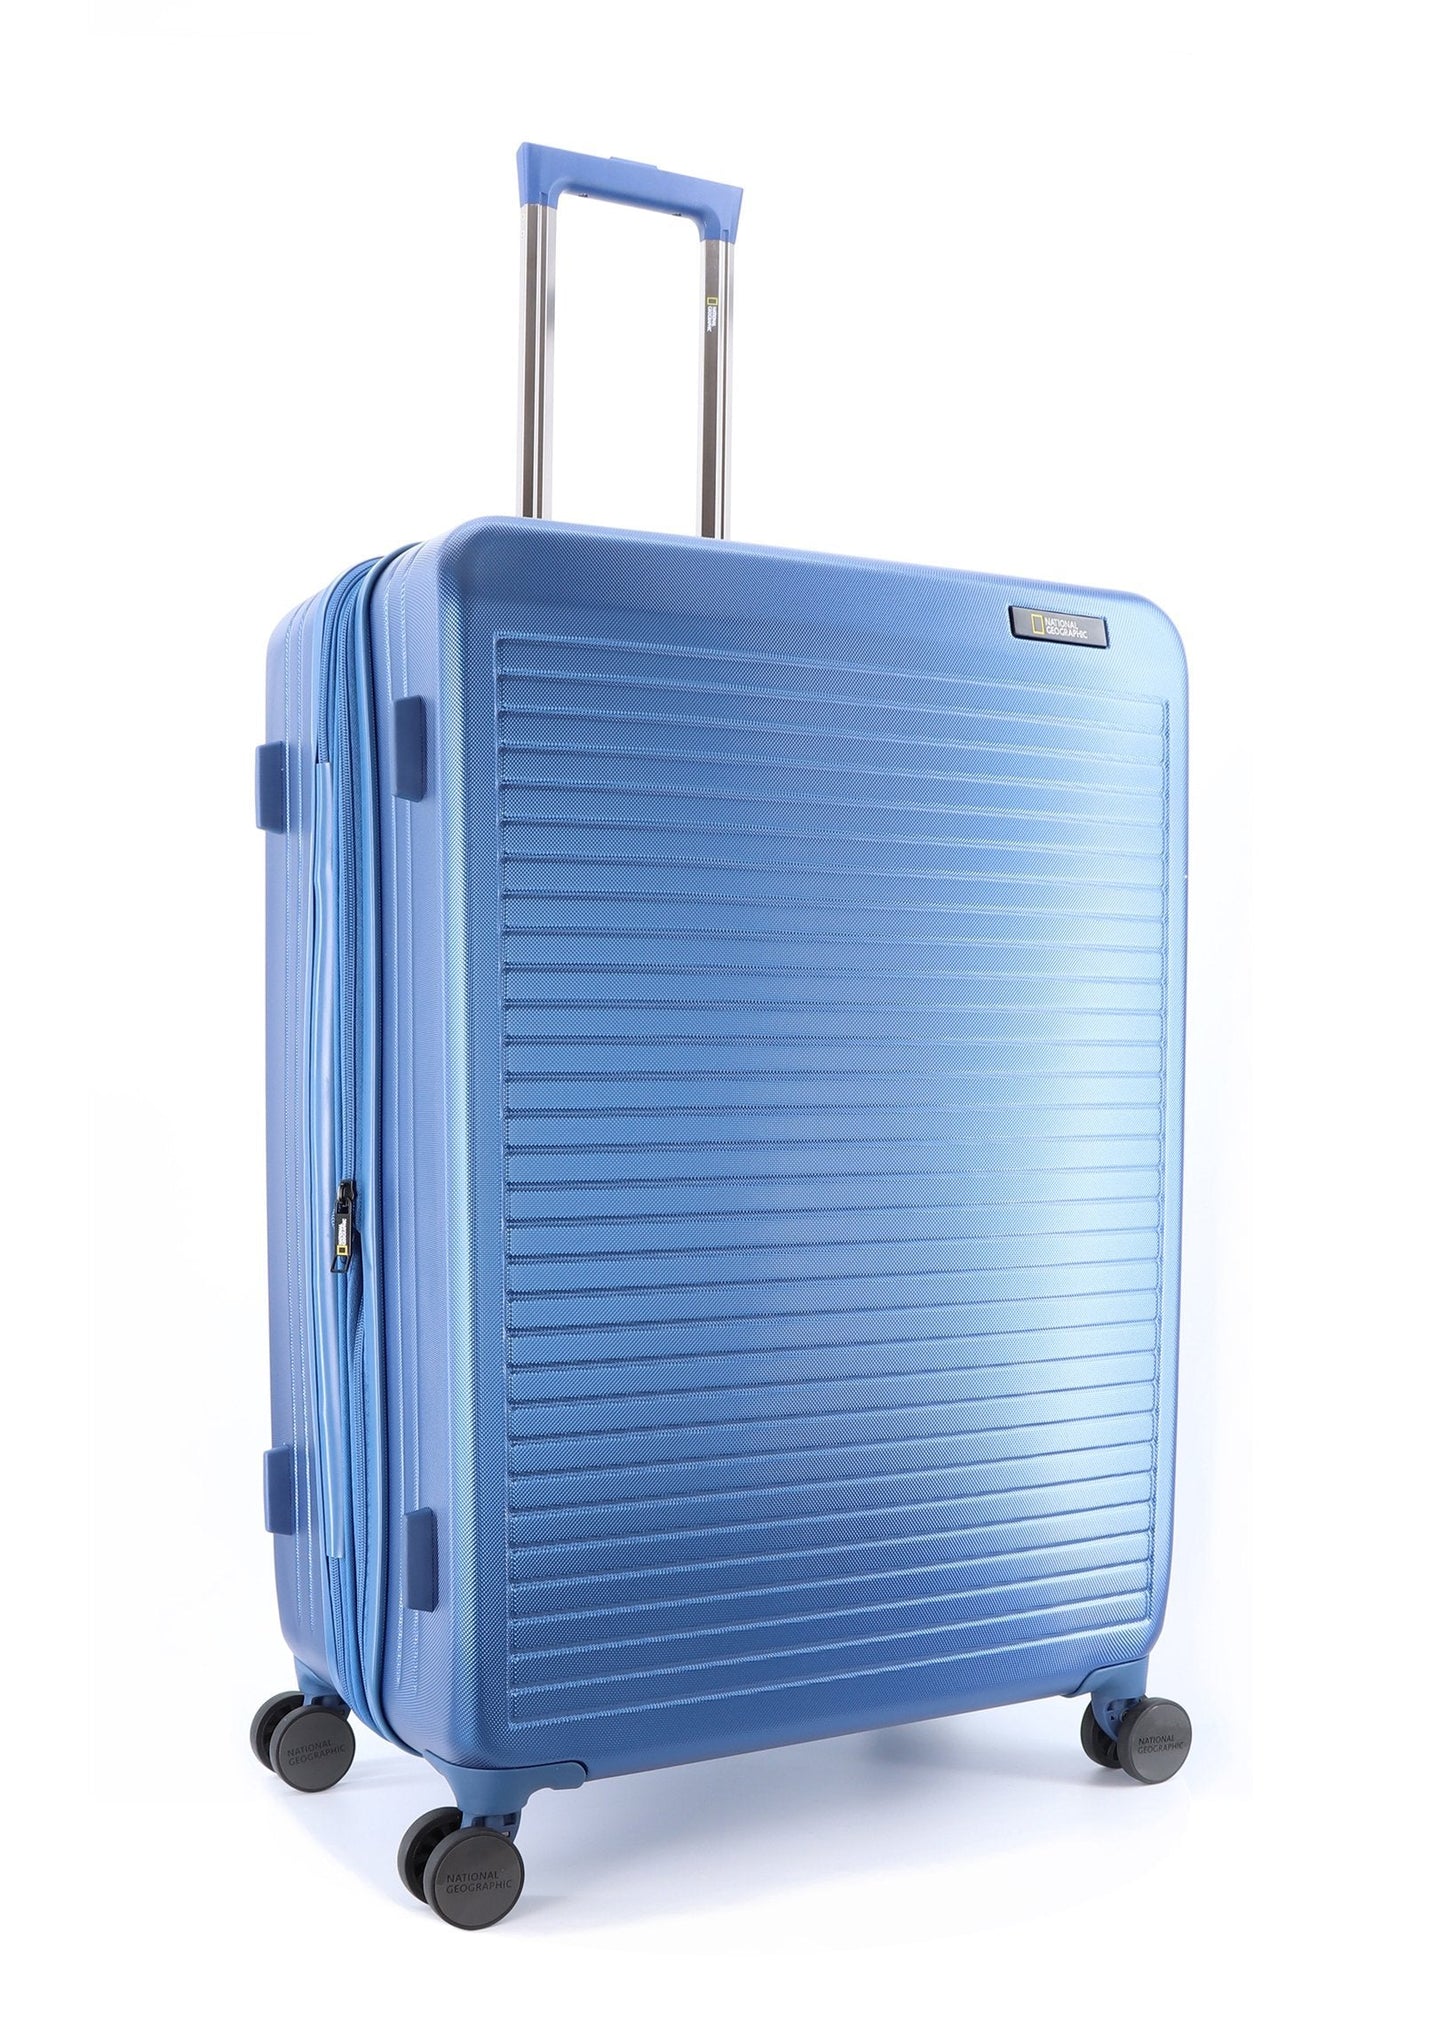 Ensemble de valises rigides National Geographic 3 pièces / ensemble de valises de voyage / ensemble de chariots - Pulse - Bleu